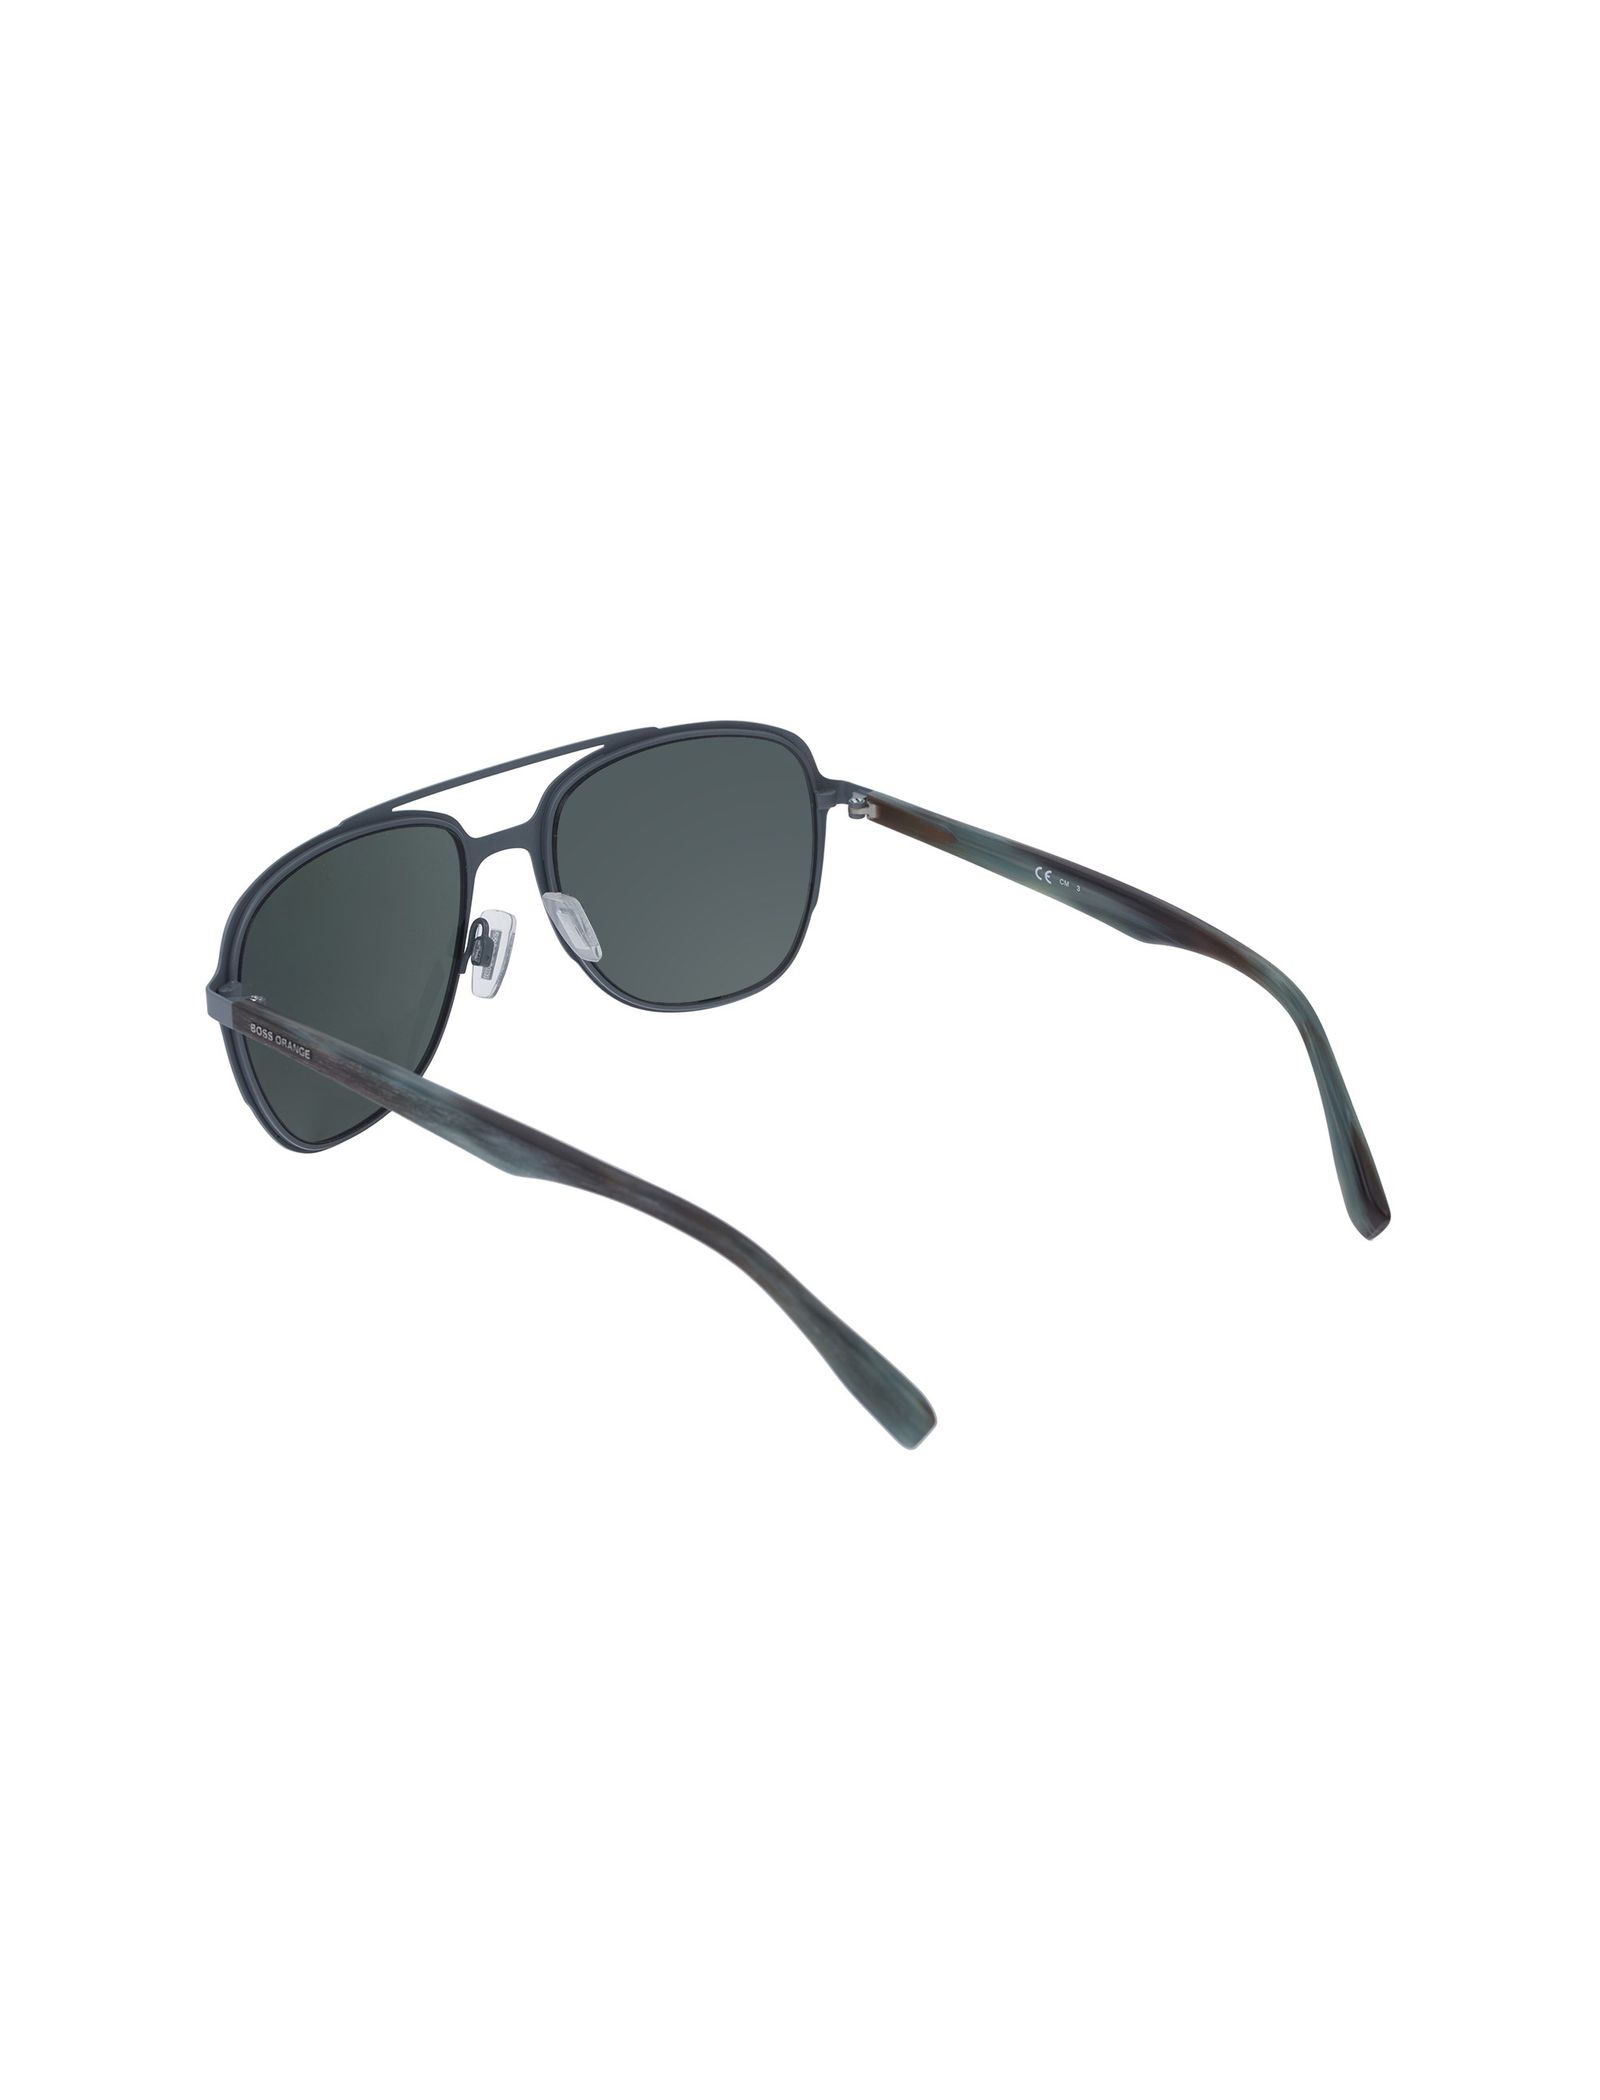 عینک آفتابی خلبانی مردانه - باس اورنج - سبز - 4